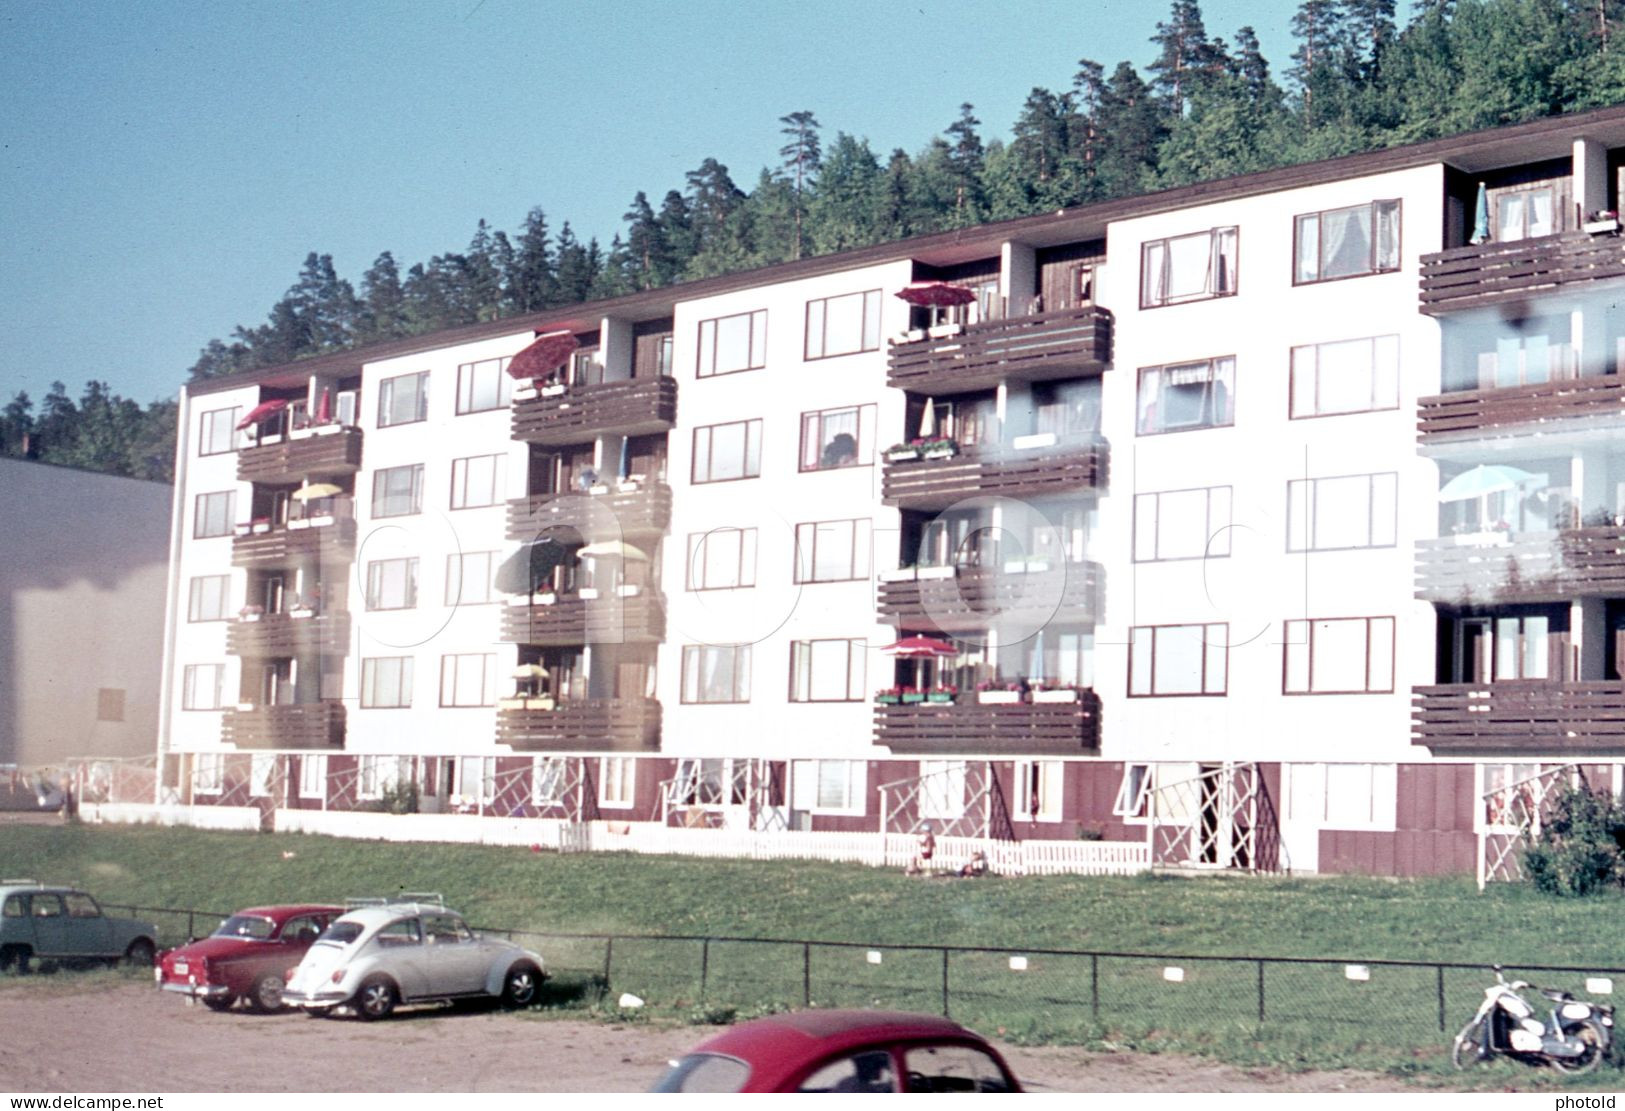 12 SLIDES SET 1977 OSLO NORWAY NORGE AMATEUR 35mm SLIDE PHOTO 35mm DIAPOSITIVE SLIDE Not PHOTO No FOTO NB4105 - Dias